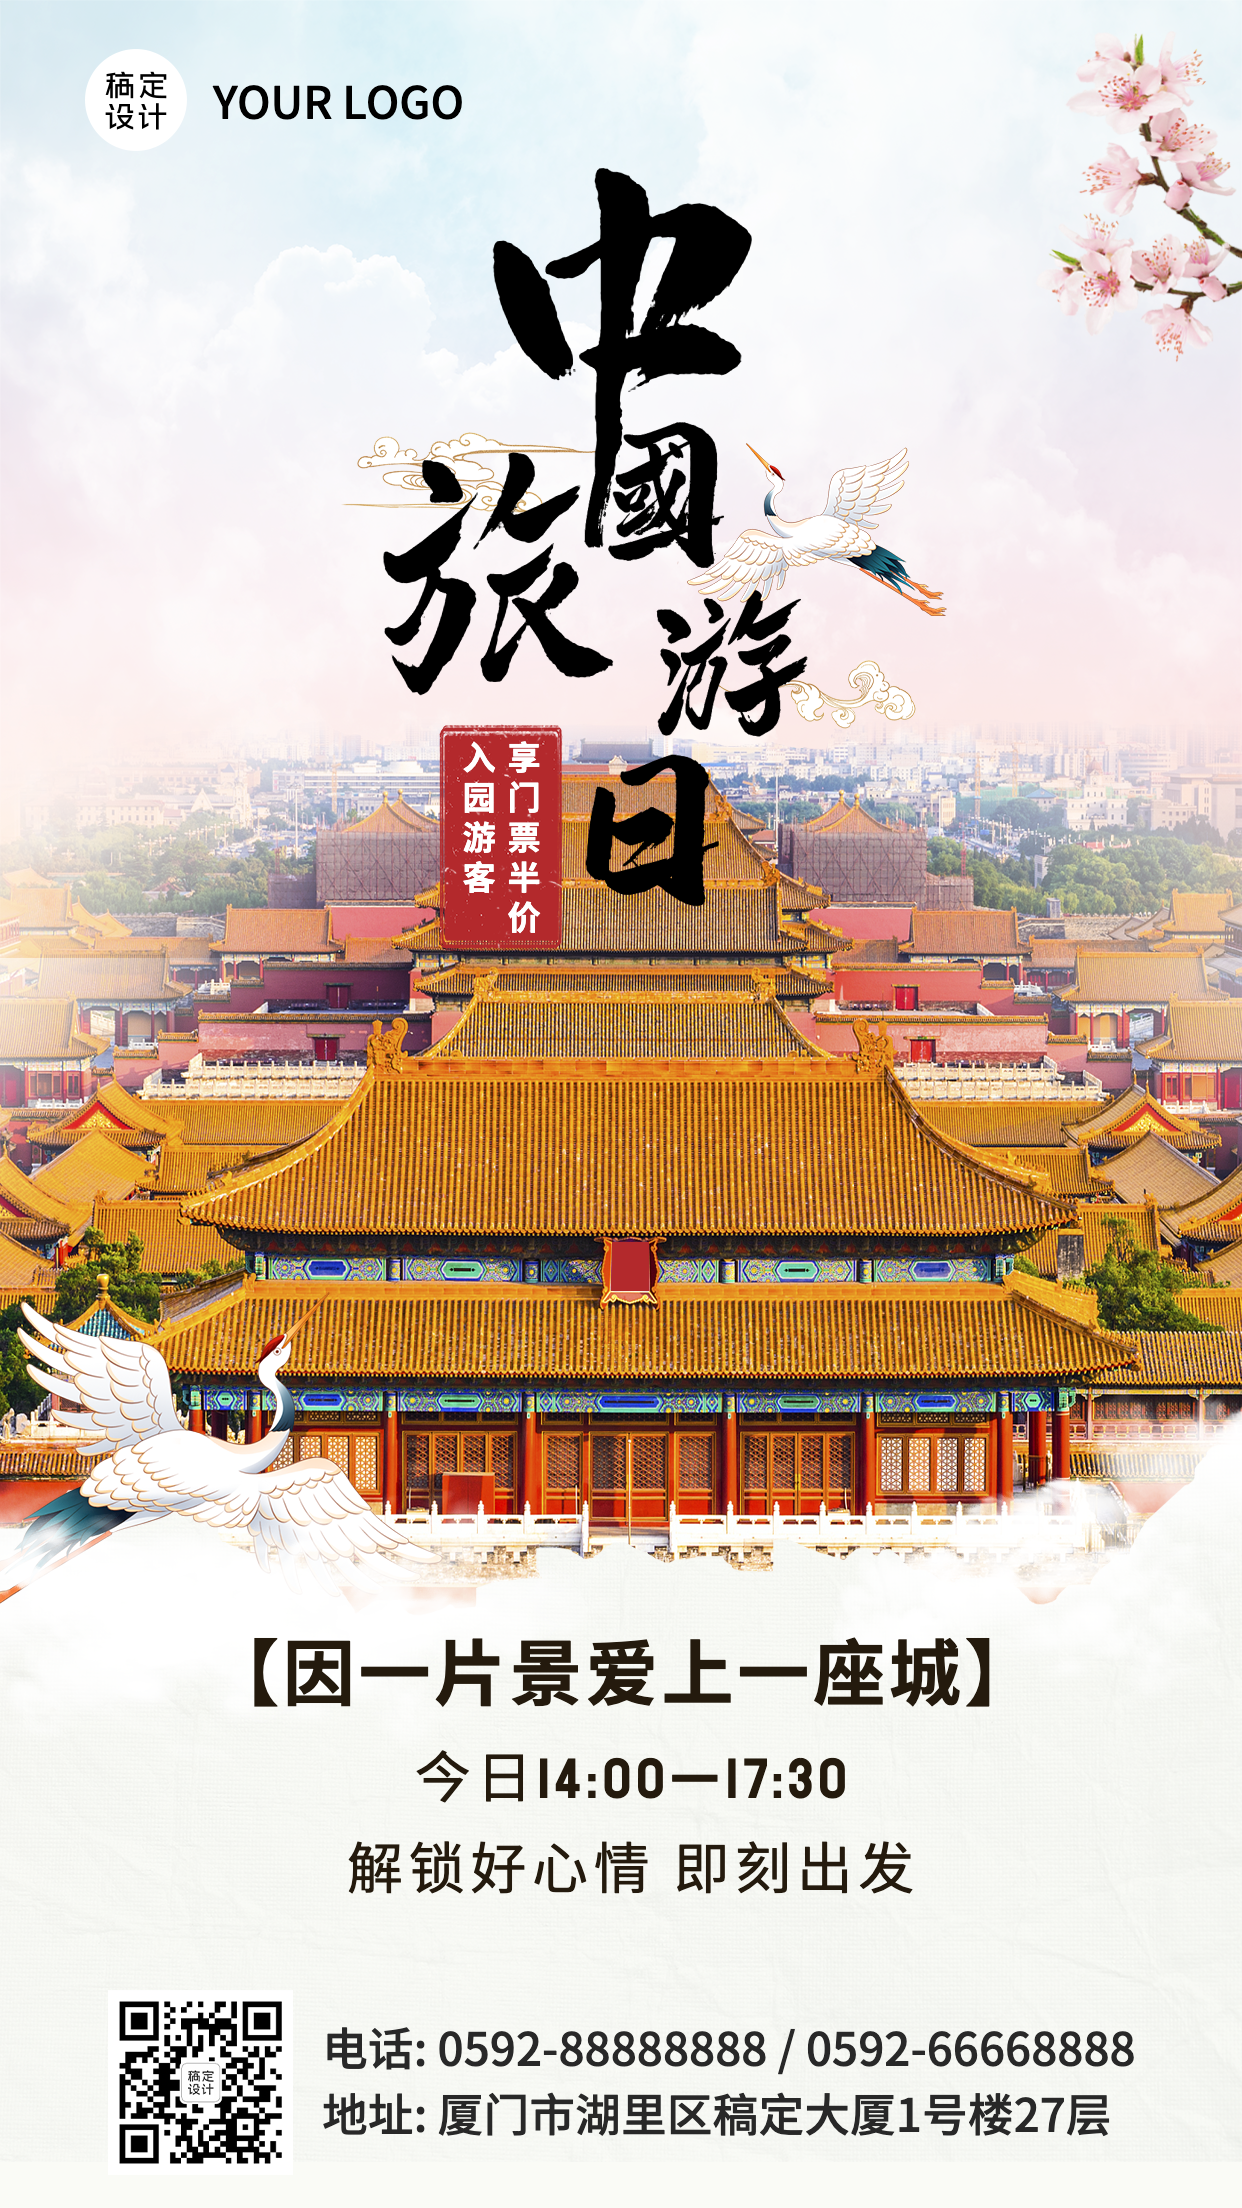 中国旅游日景区宣传促销实景海报